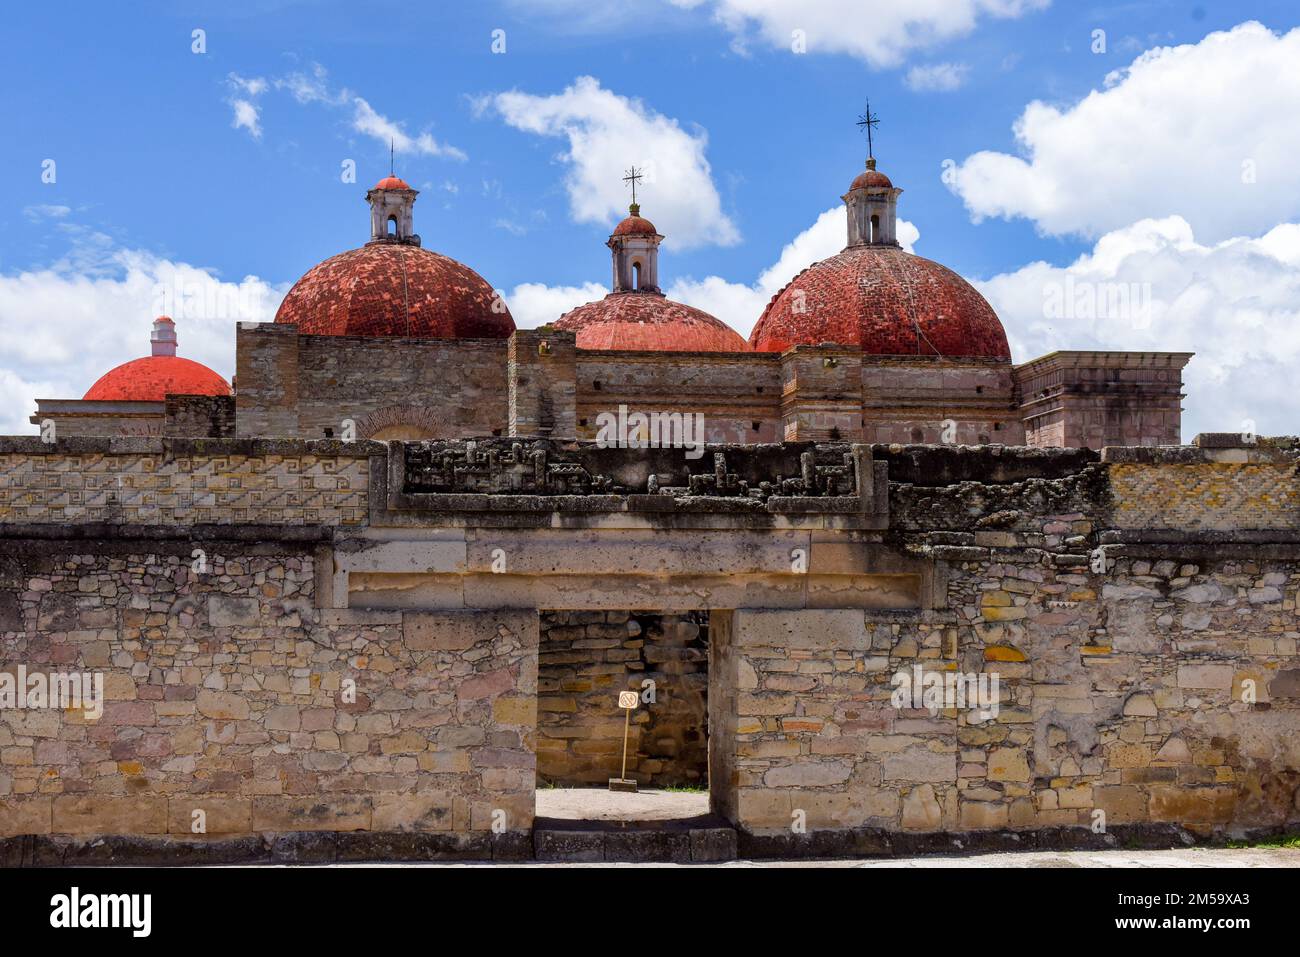 La zona arqueológica de Mitla (civilización zapoteca), estado de Oaxaca, México Foto de stock